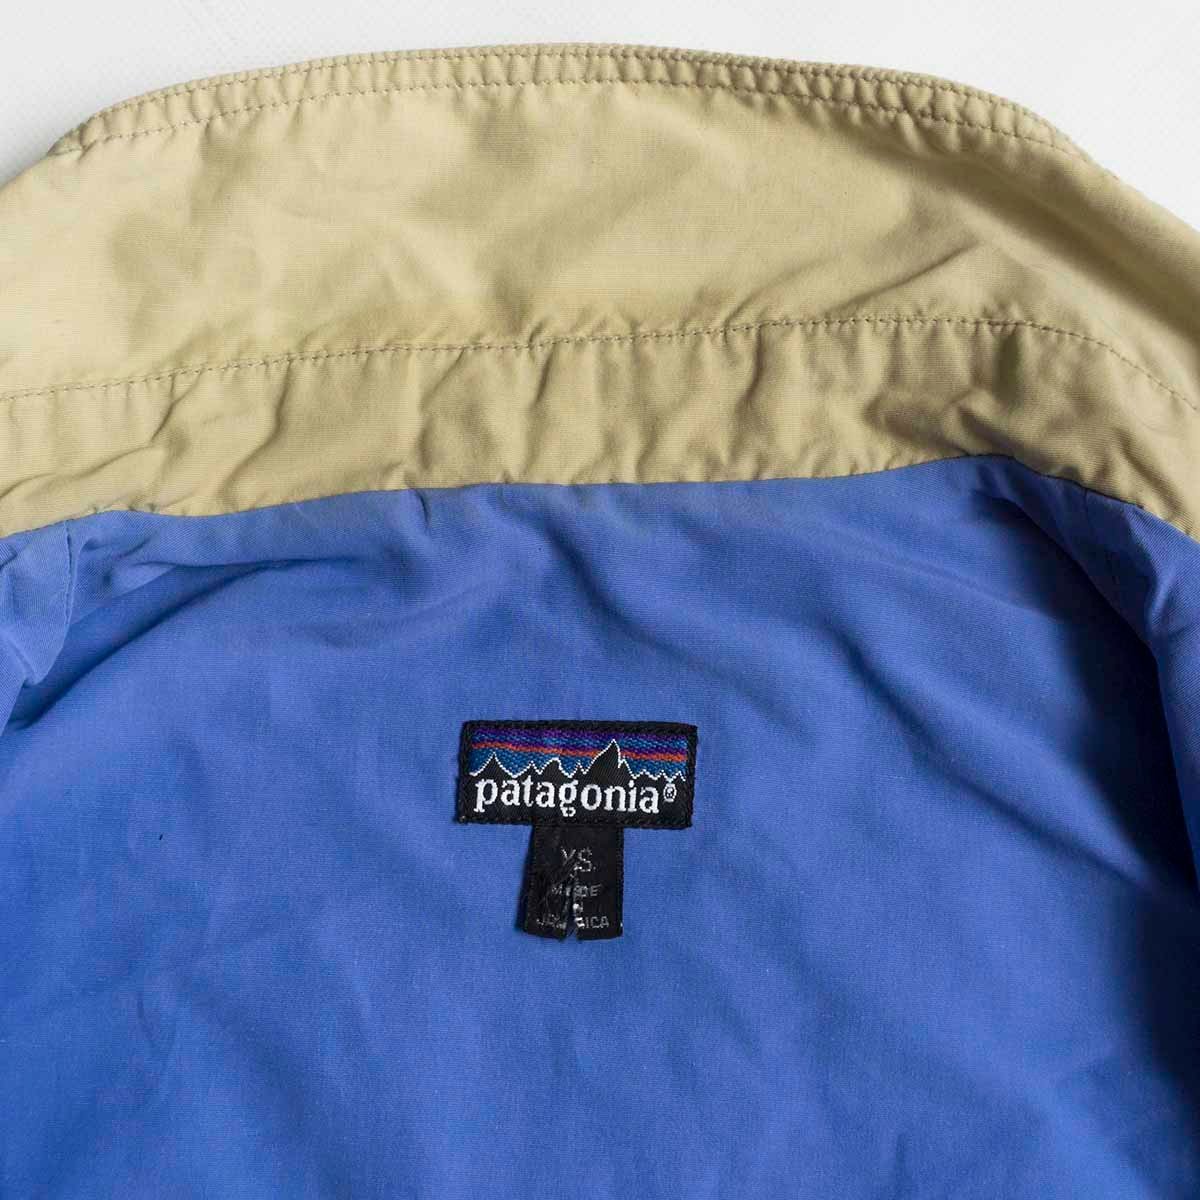 【希少】PATAGONIA【90s baggies jacket】XS ベージュ バギーズ ナイロン ジャケット y2304048_画像5